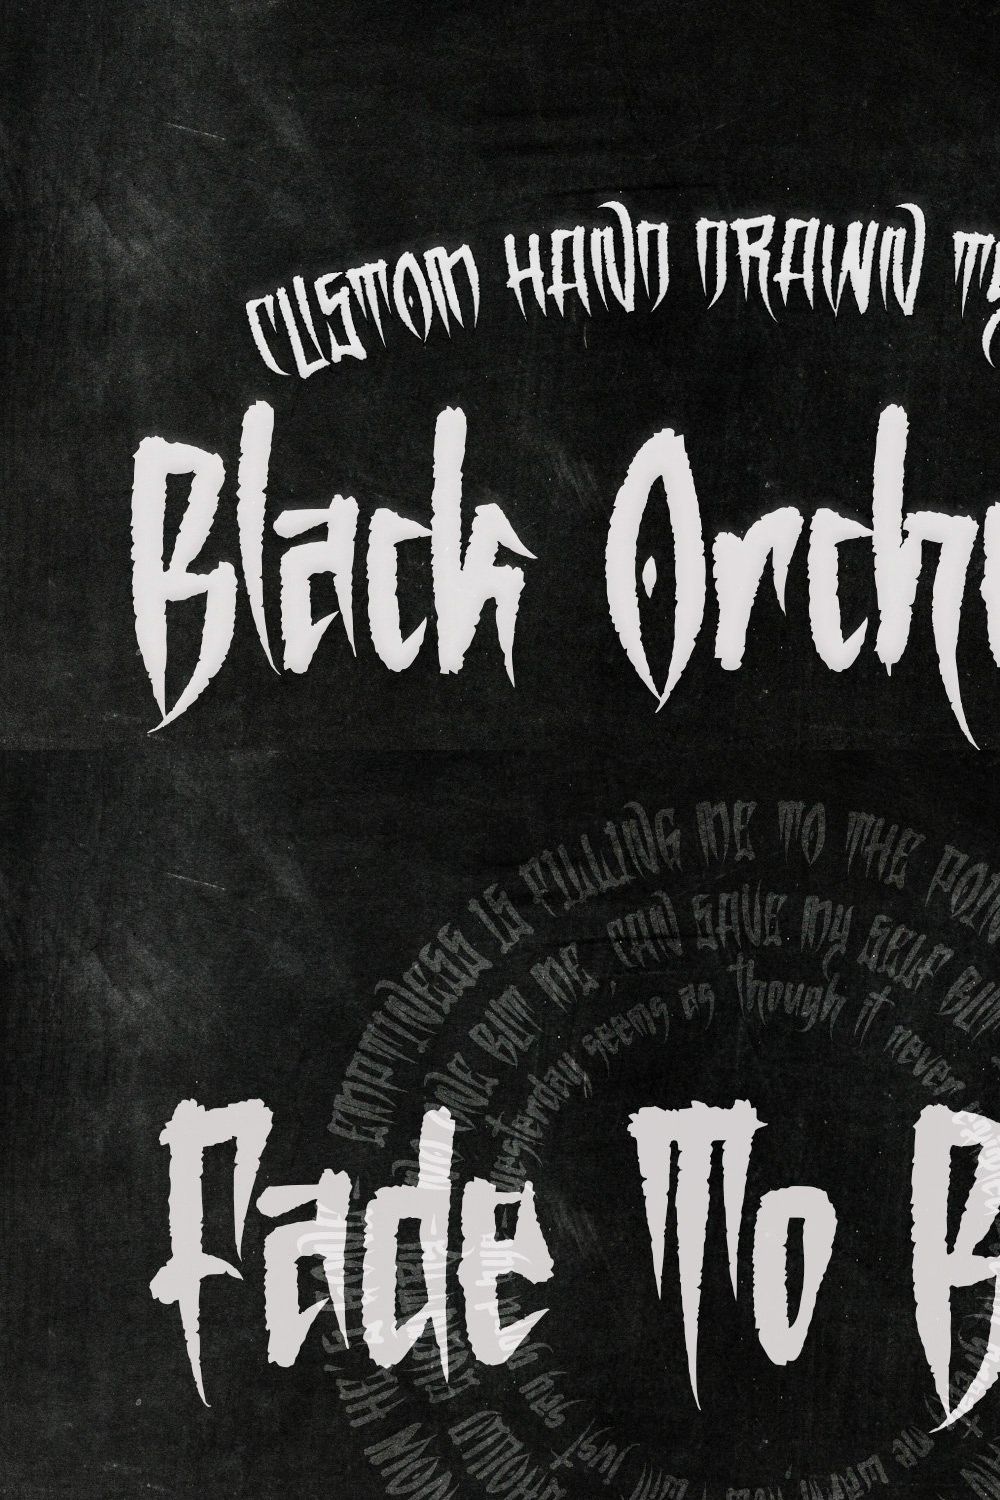 Black Orchestra - Blackletter font pinterest preview image.